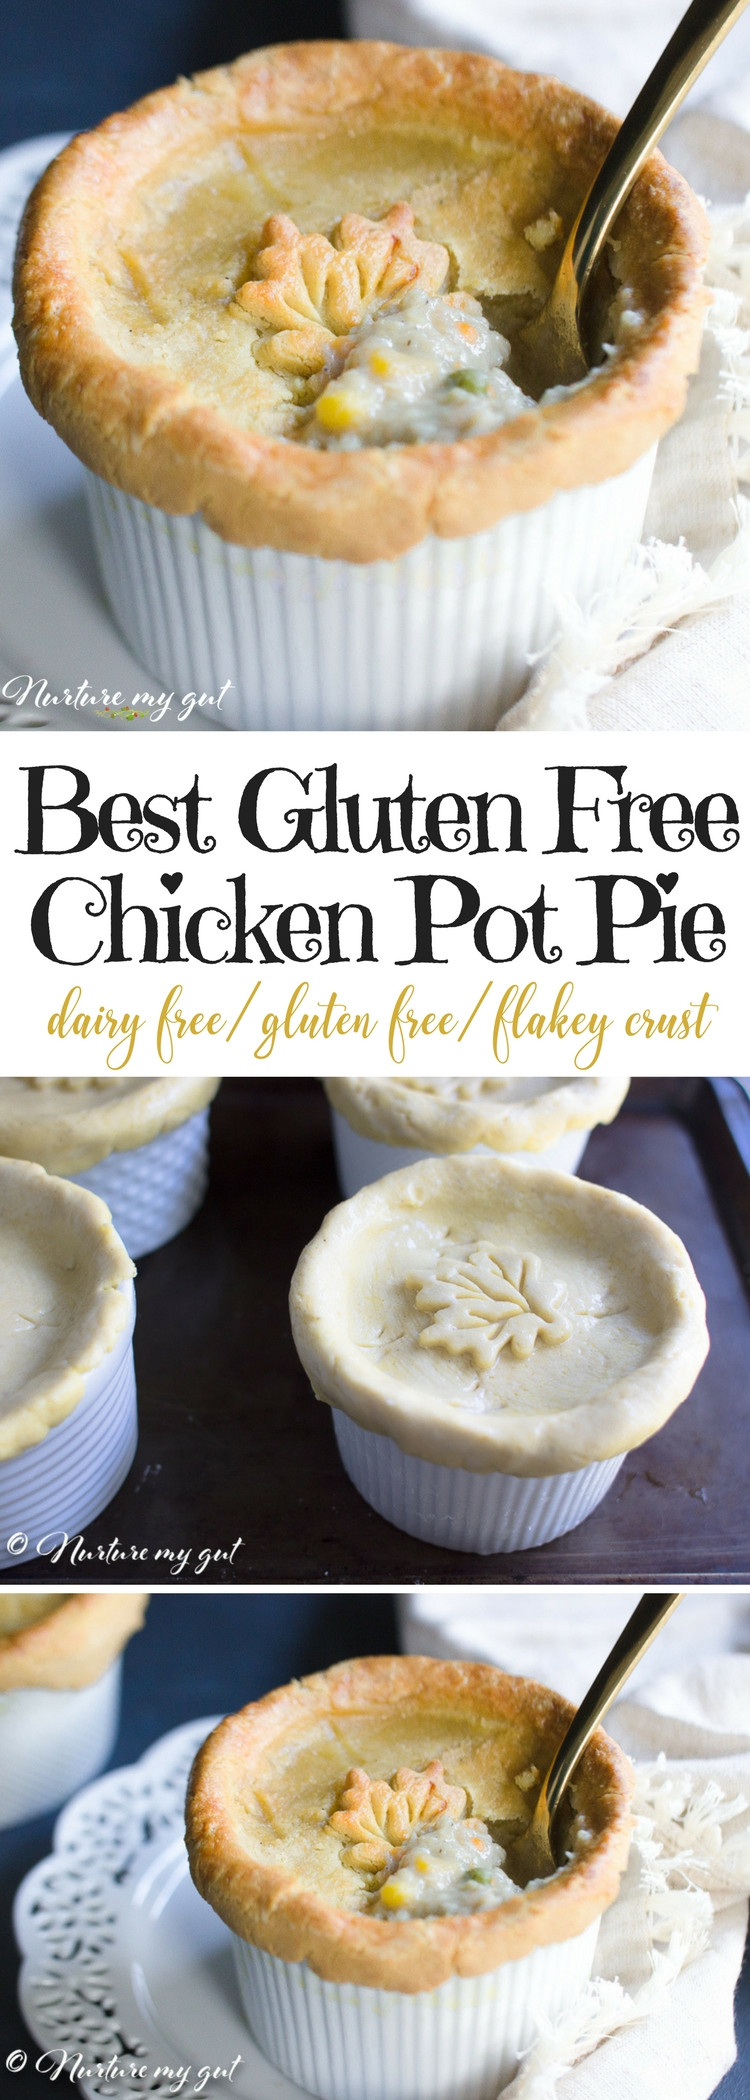 Gluten Free Dairy Free Chicken Recipes
 Best Gluten Free Chicken Pot Pie Recipe Dairy Free